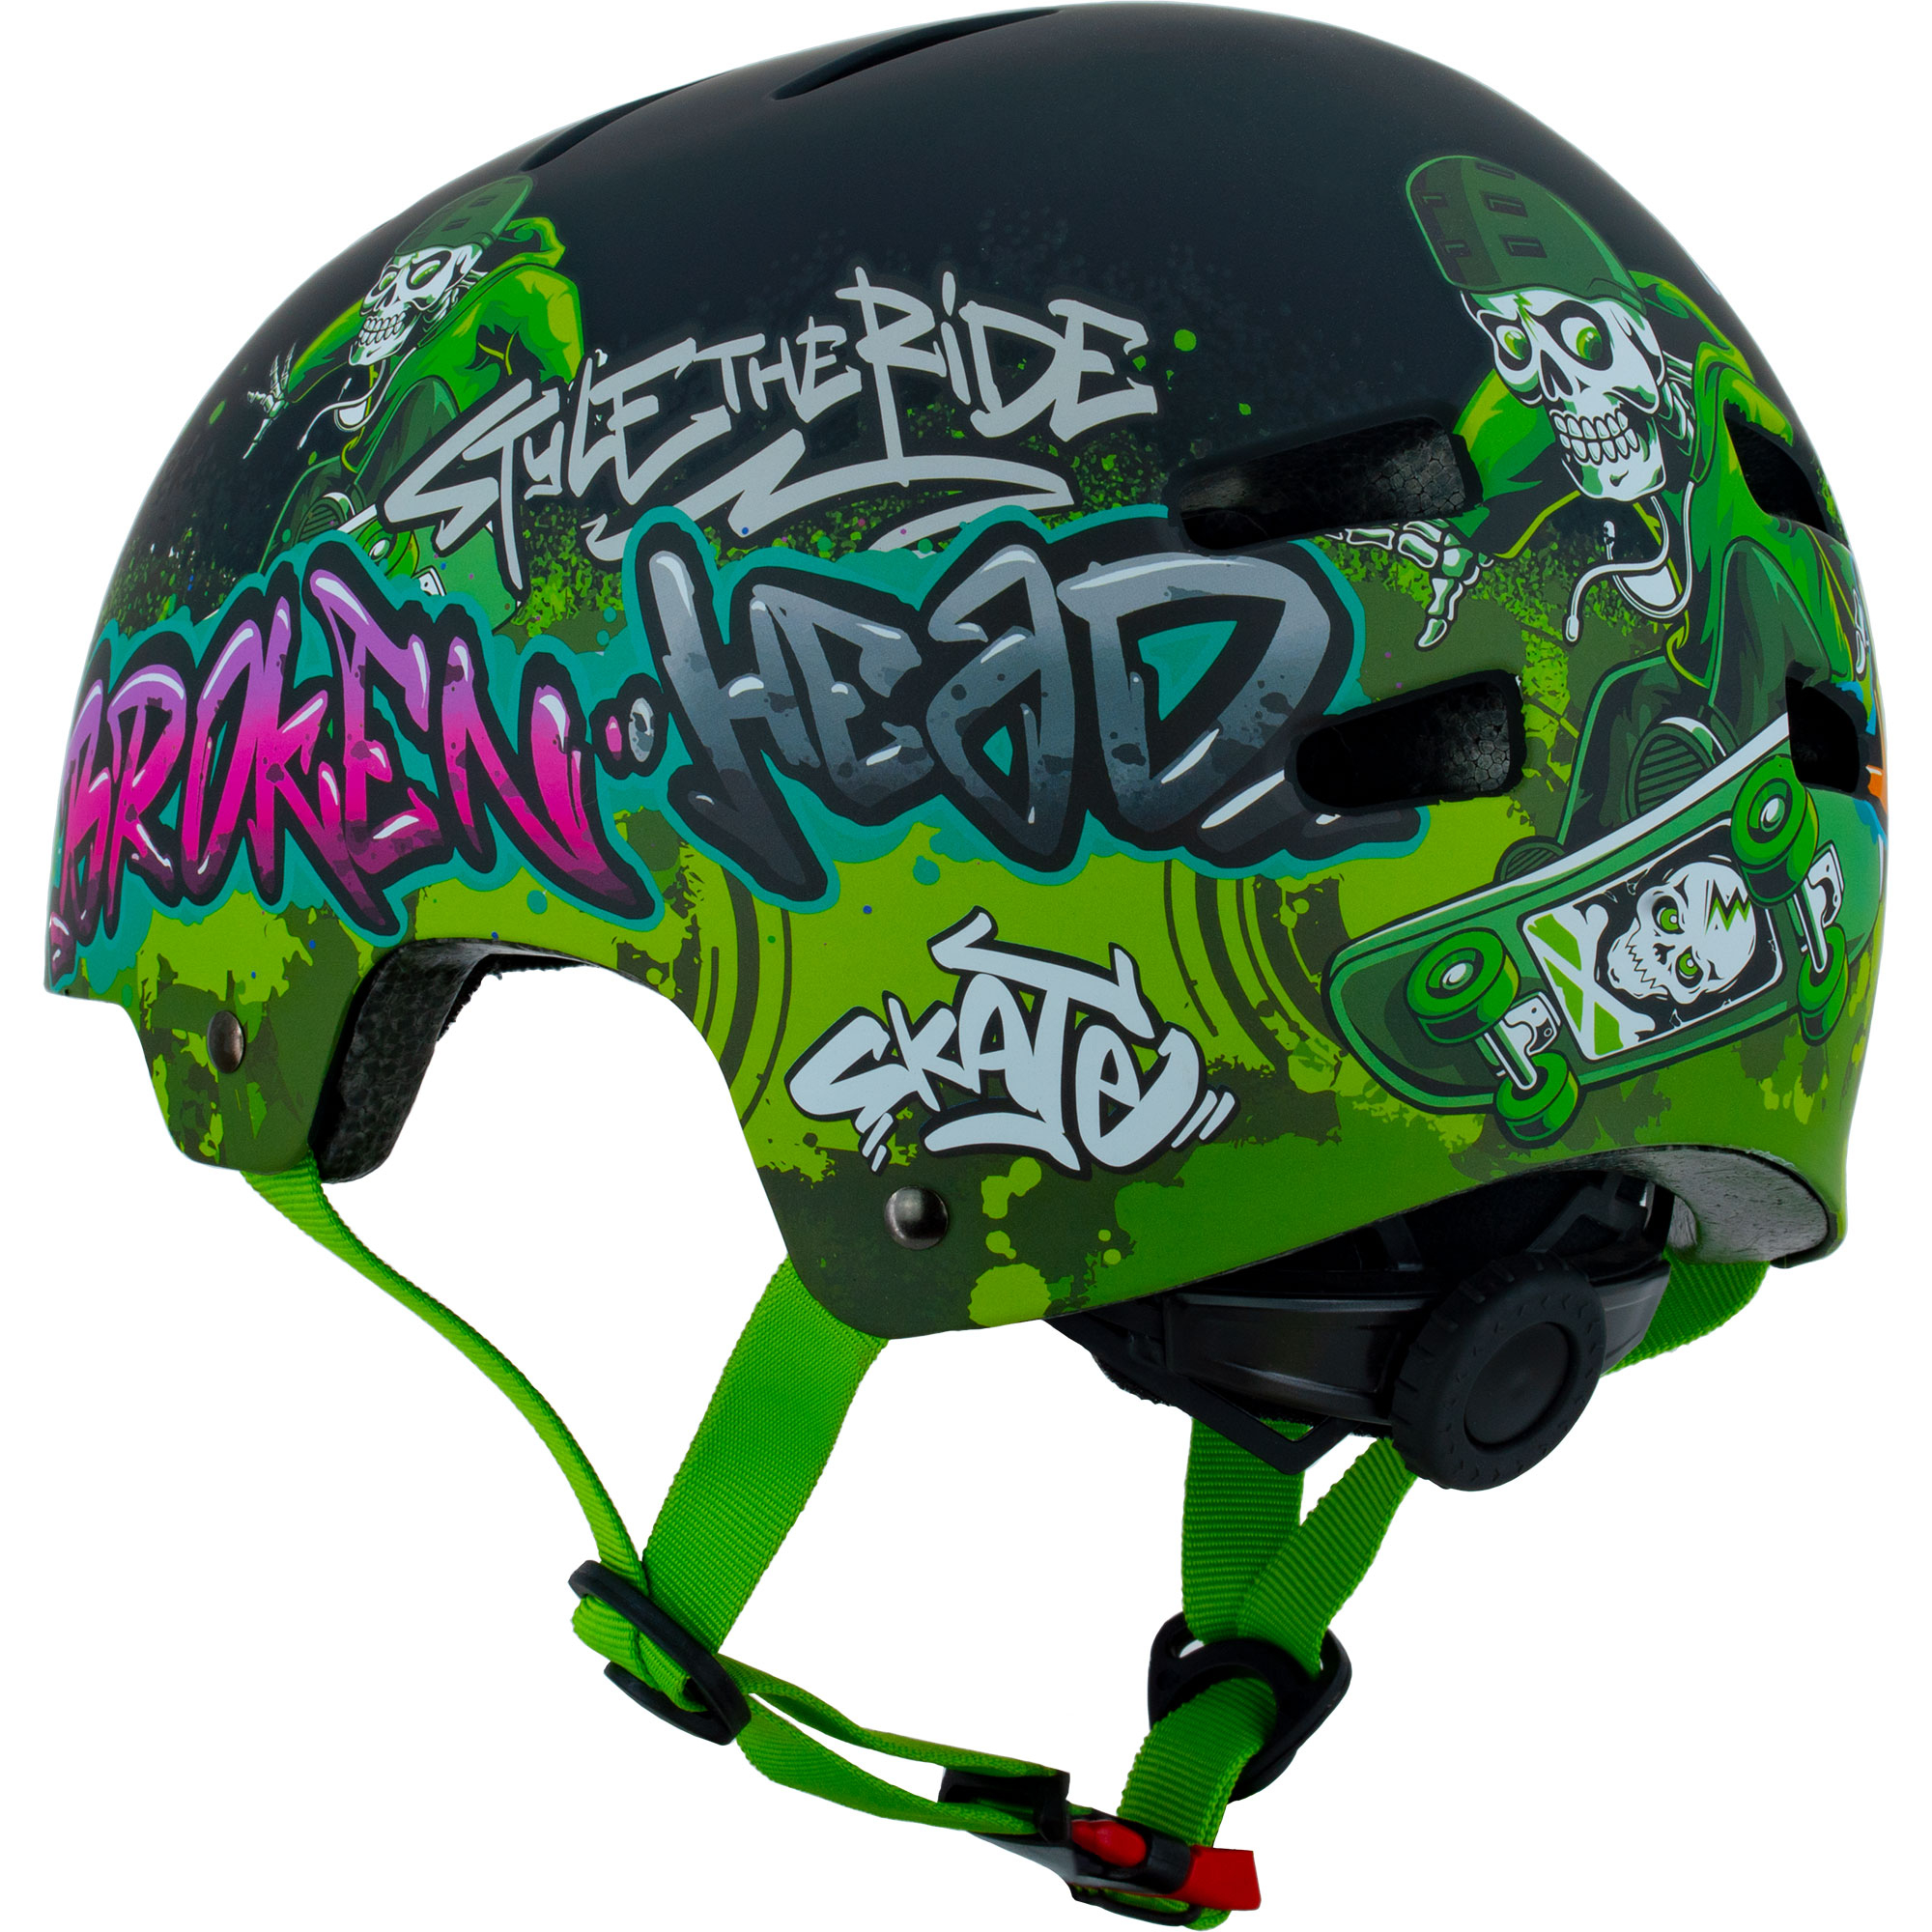 Broken Head casque de skate & casque de VTT Skate Boner